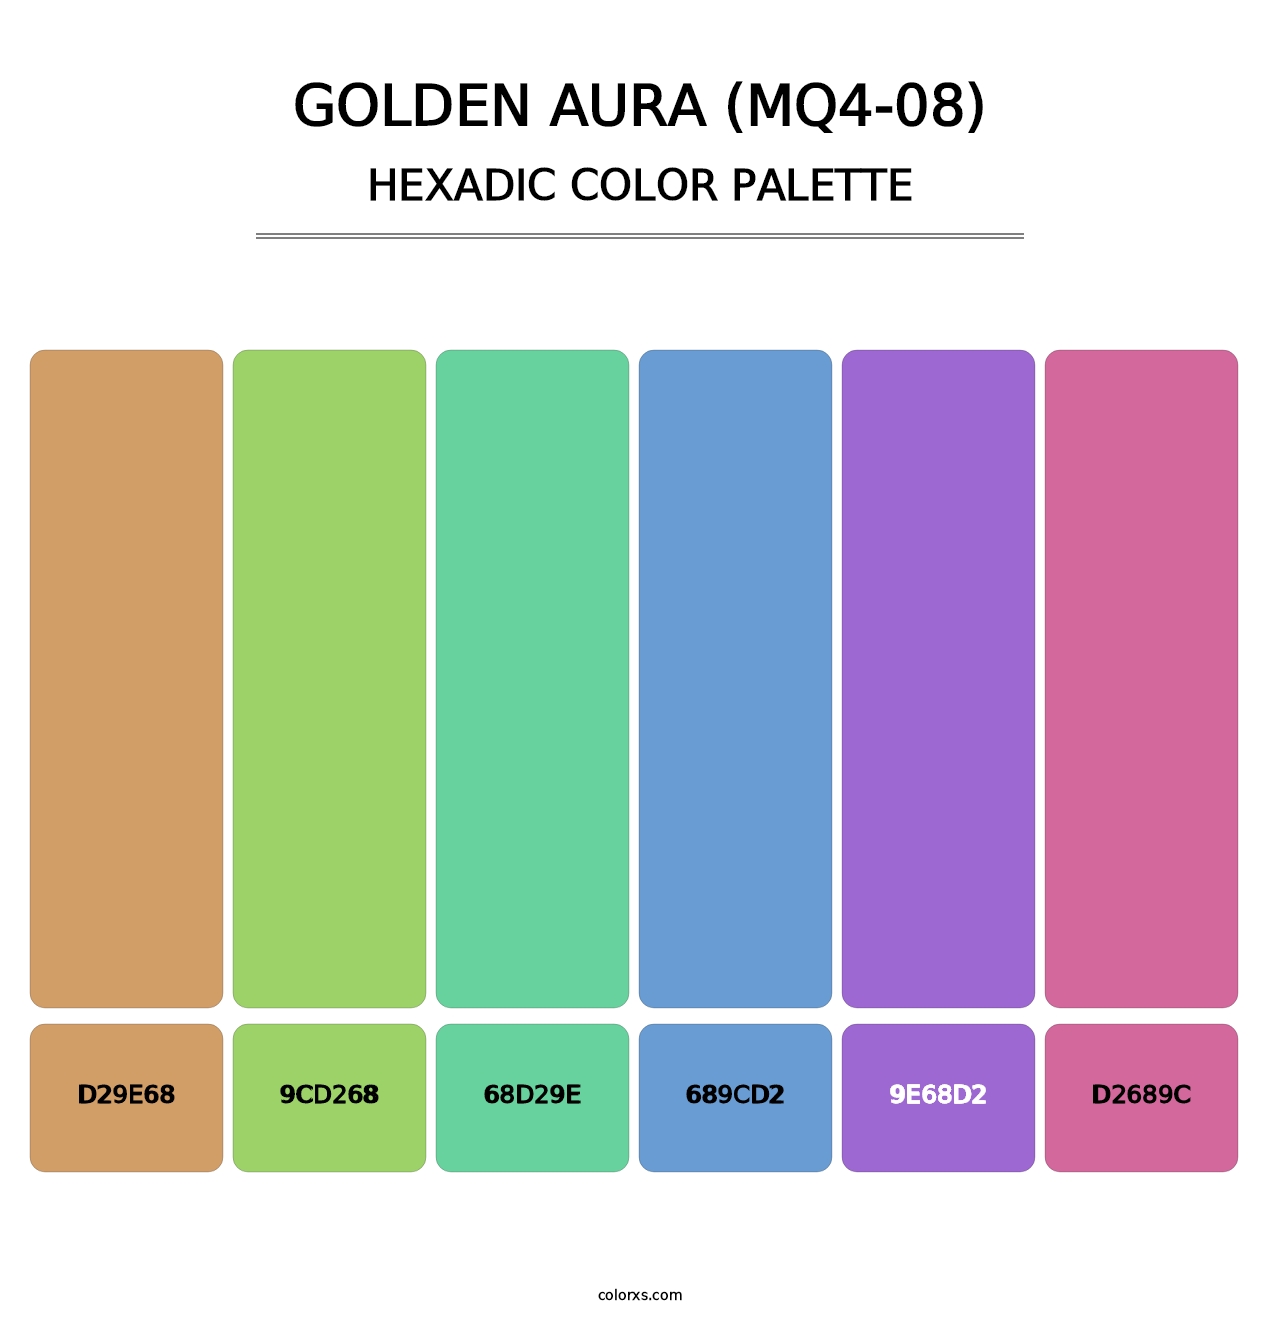 Golden Aura (MQ4-08) - Hexadic Color Palette